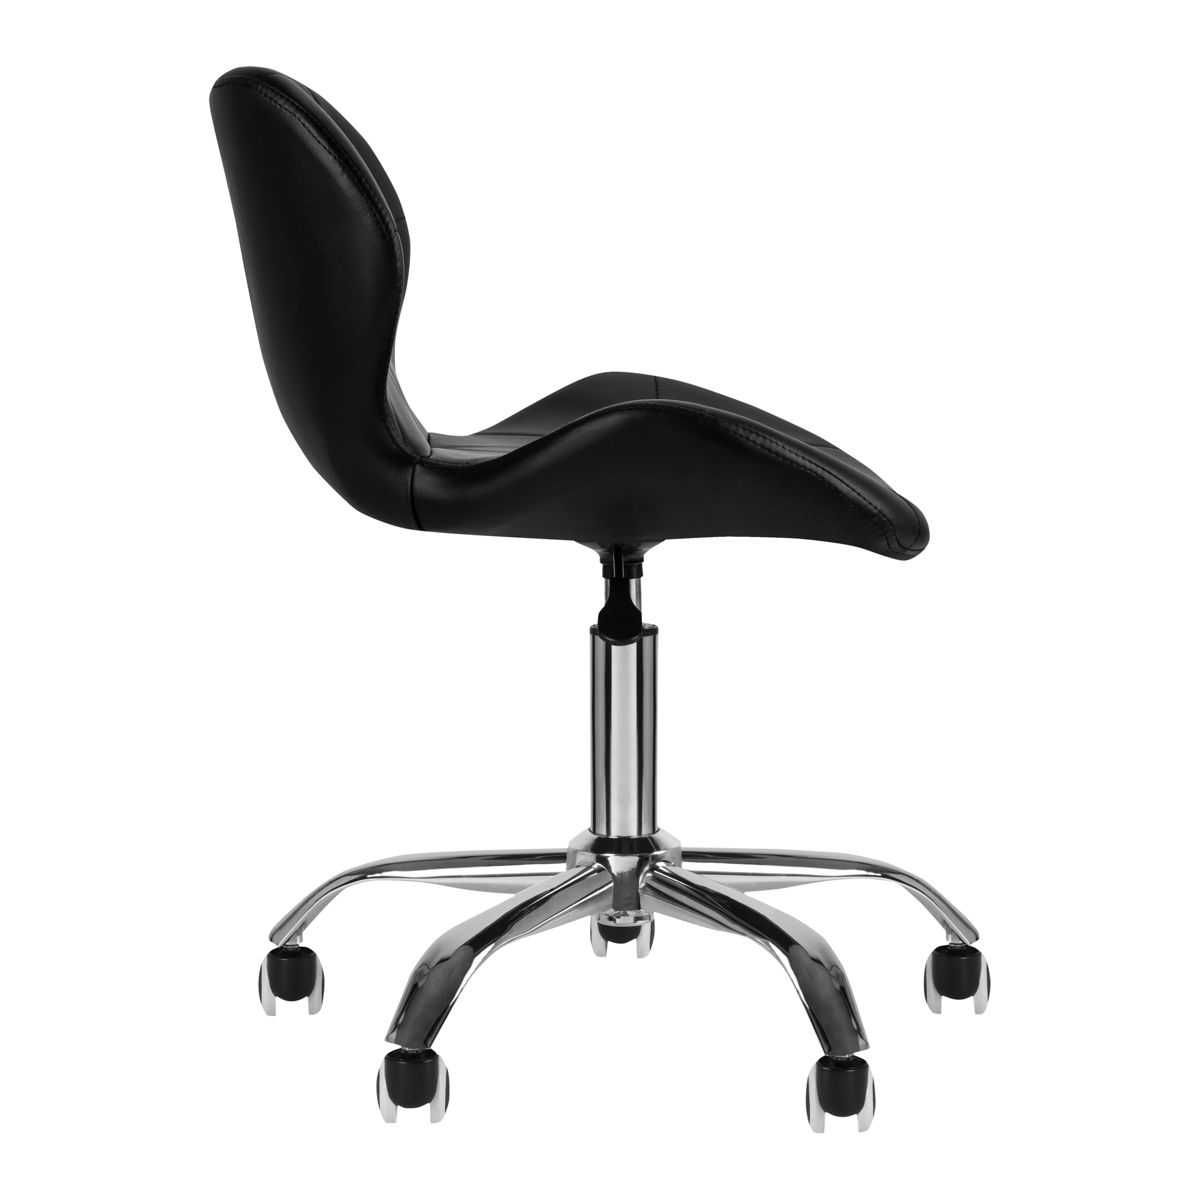 Козметичен стол - табуретка с облегалка QS-06 42/54 см - бяла /черна